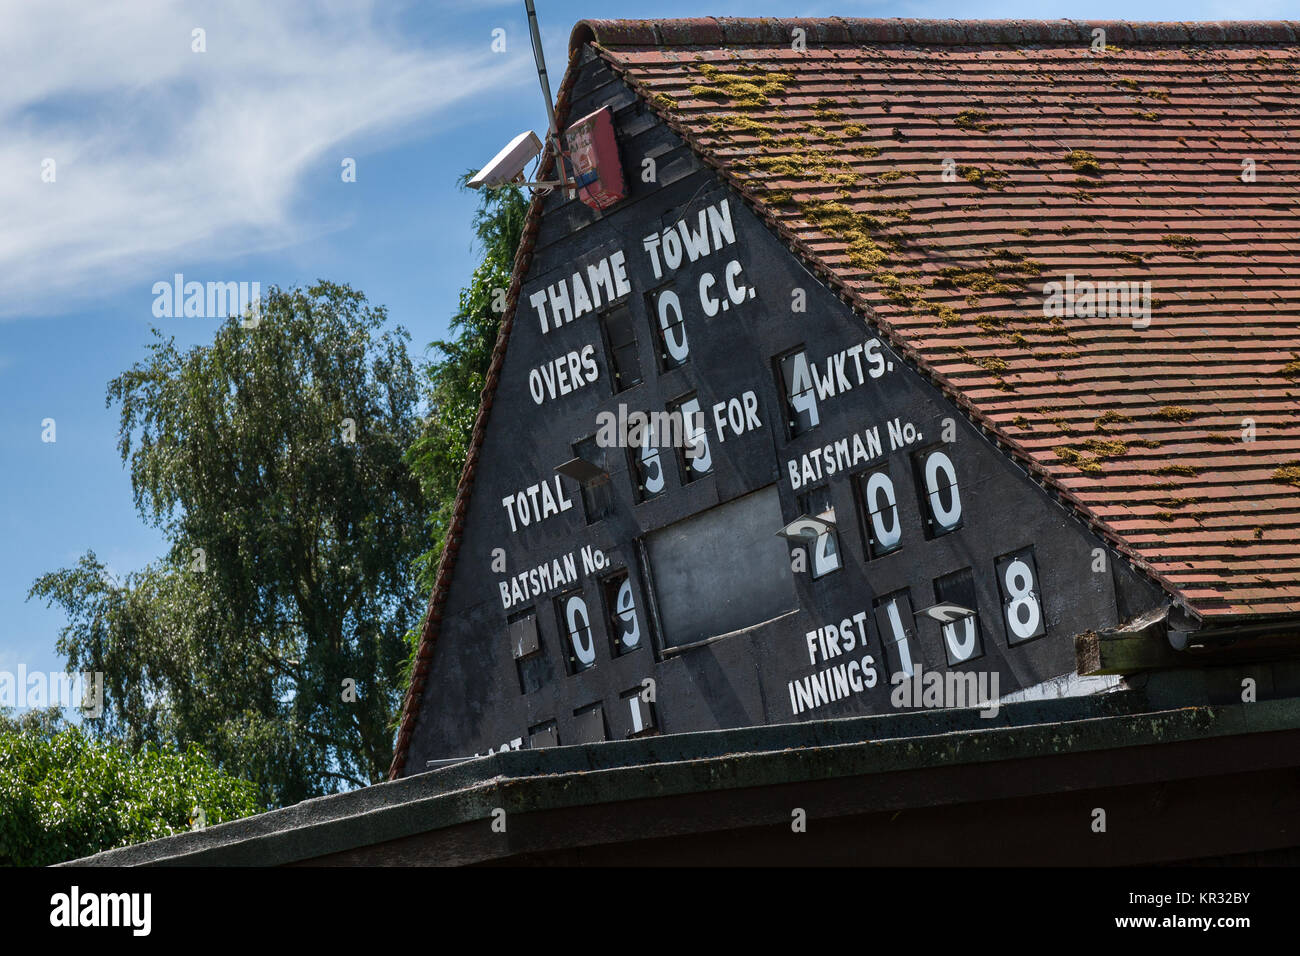 Panneau de score à Thame cricket pavillion Oxfordshire UK Banque D'Images